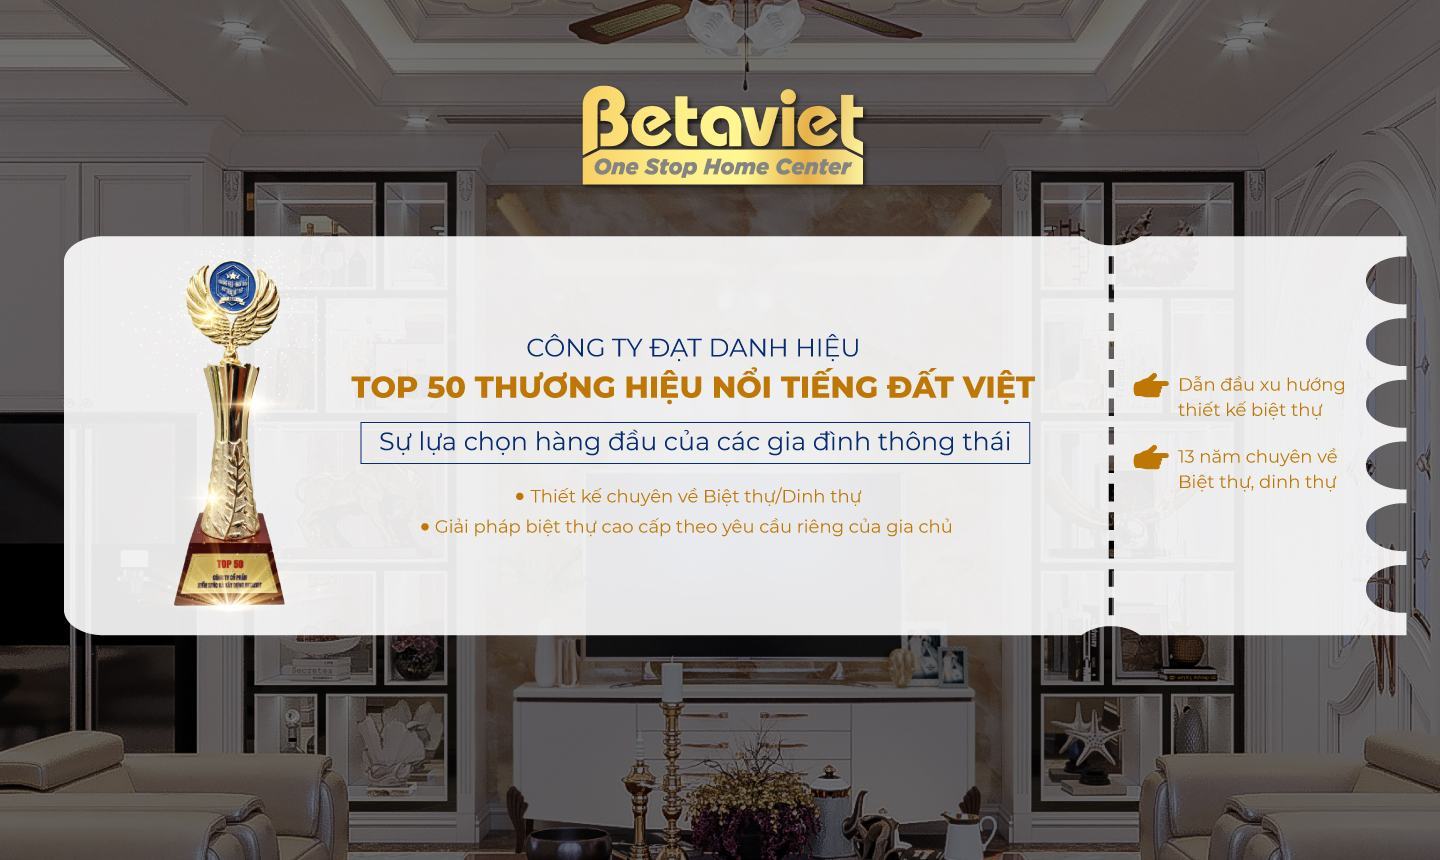 Bán  Bộ sưu tập 10 mẫu thiết kế biệt thự cao cấp của Betaviet  VietFones  Forum